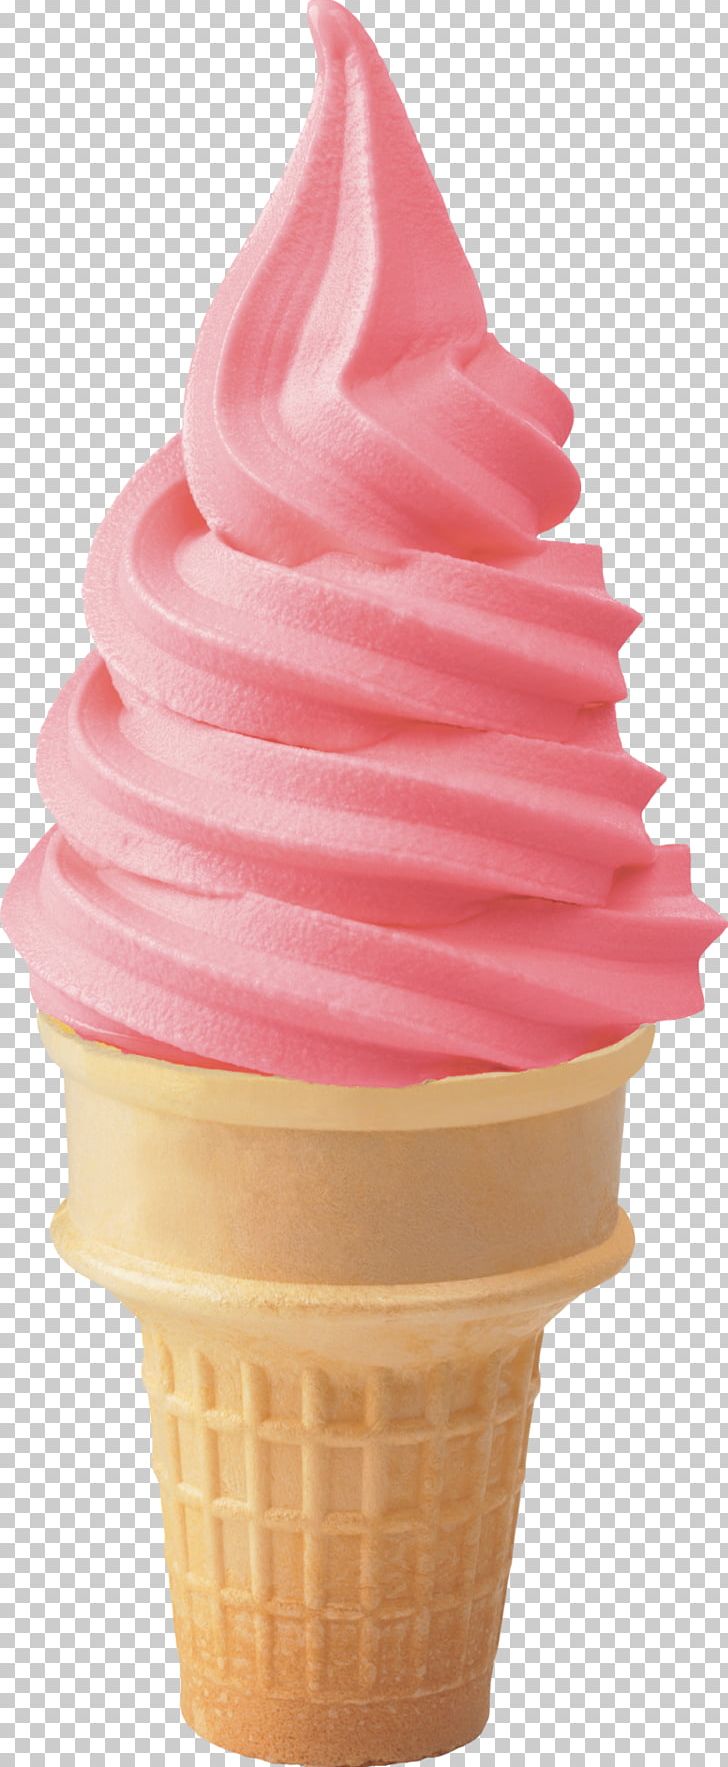 Ice Cream Cones Milkshake Frozen Yogurt PNG, Clipart, Baking Cup, Banana Split, Cream, Dairy Product, Dessert Free PNG Download